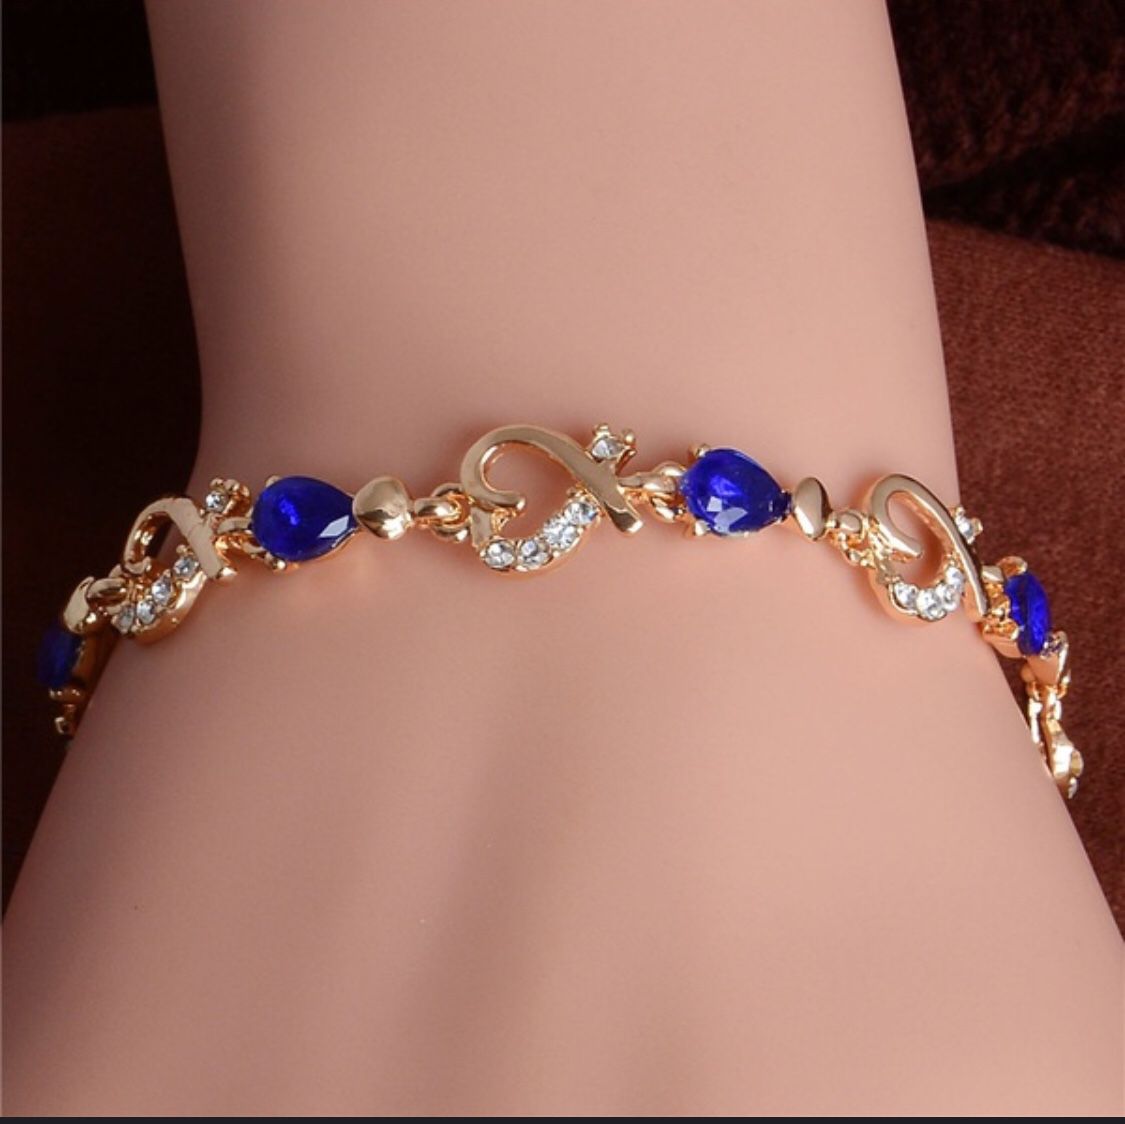 18k gold plated gemstones bracelet